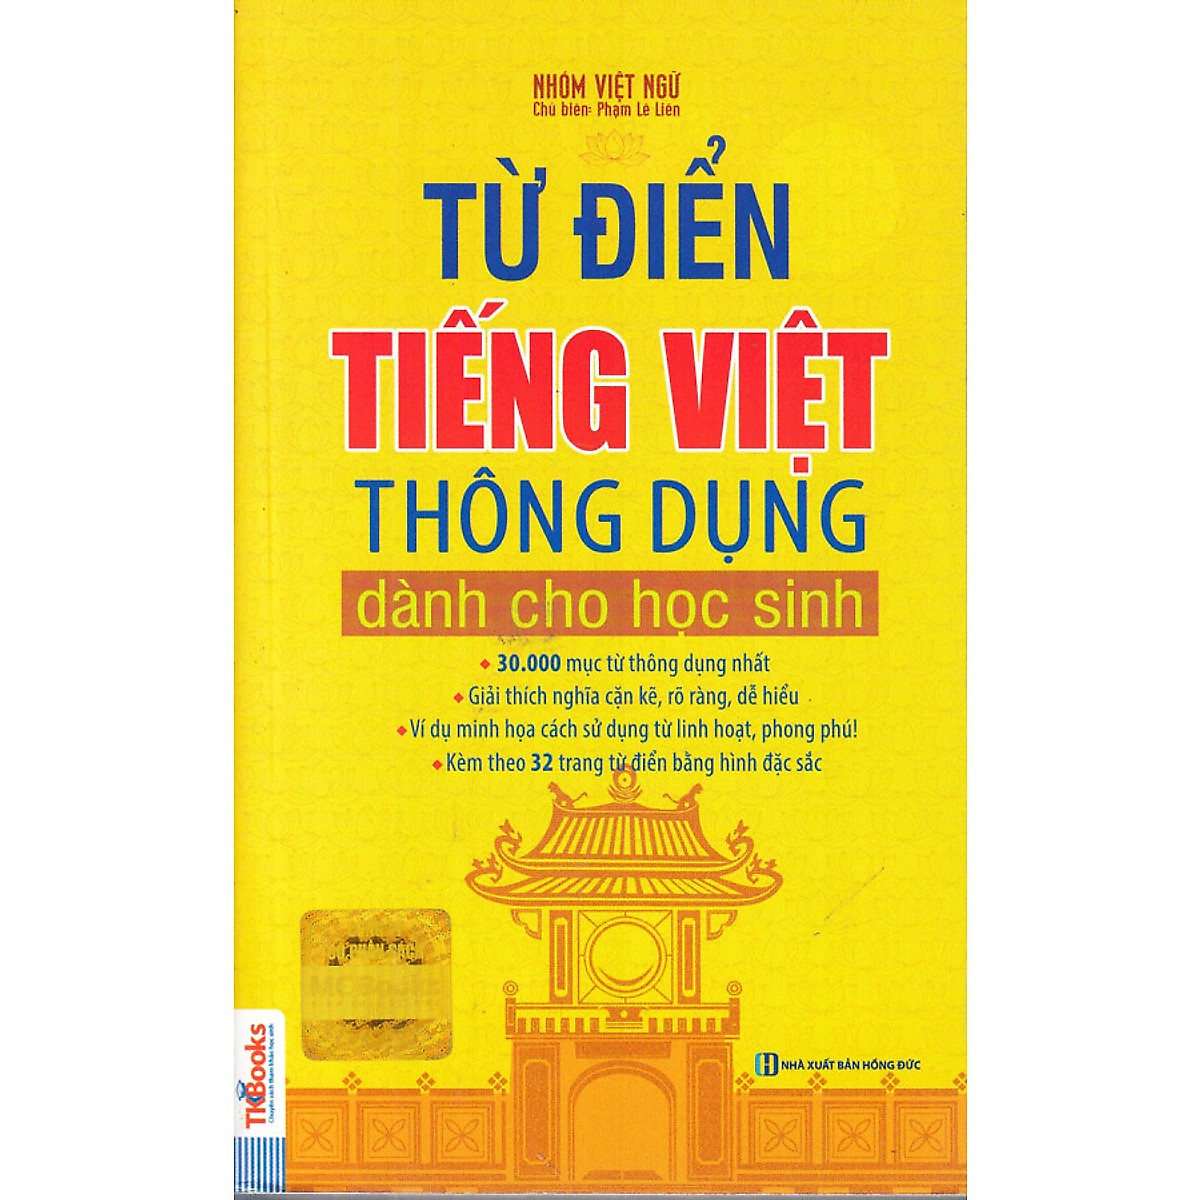 Từ Điển Tiếng Việt Thông Dụng Dành Cho Học Sinh - Khổ 10x16 (Bìa Màu Vàng)